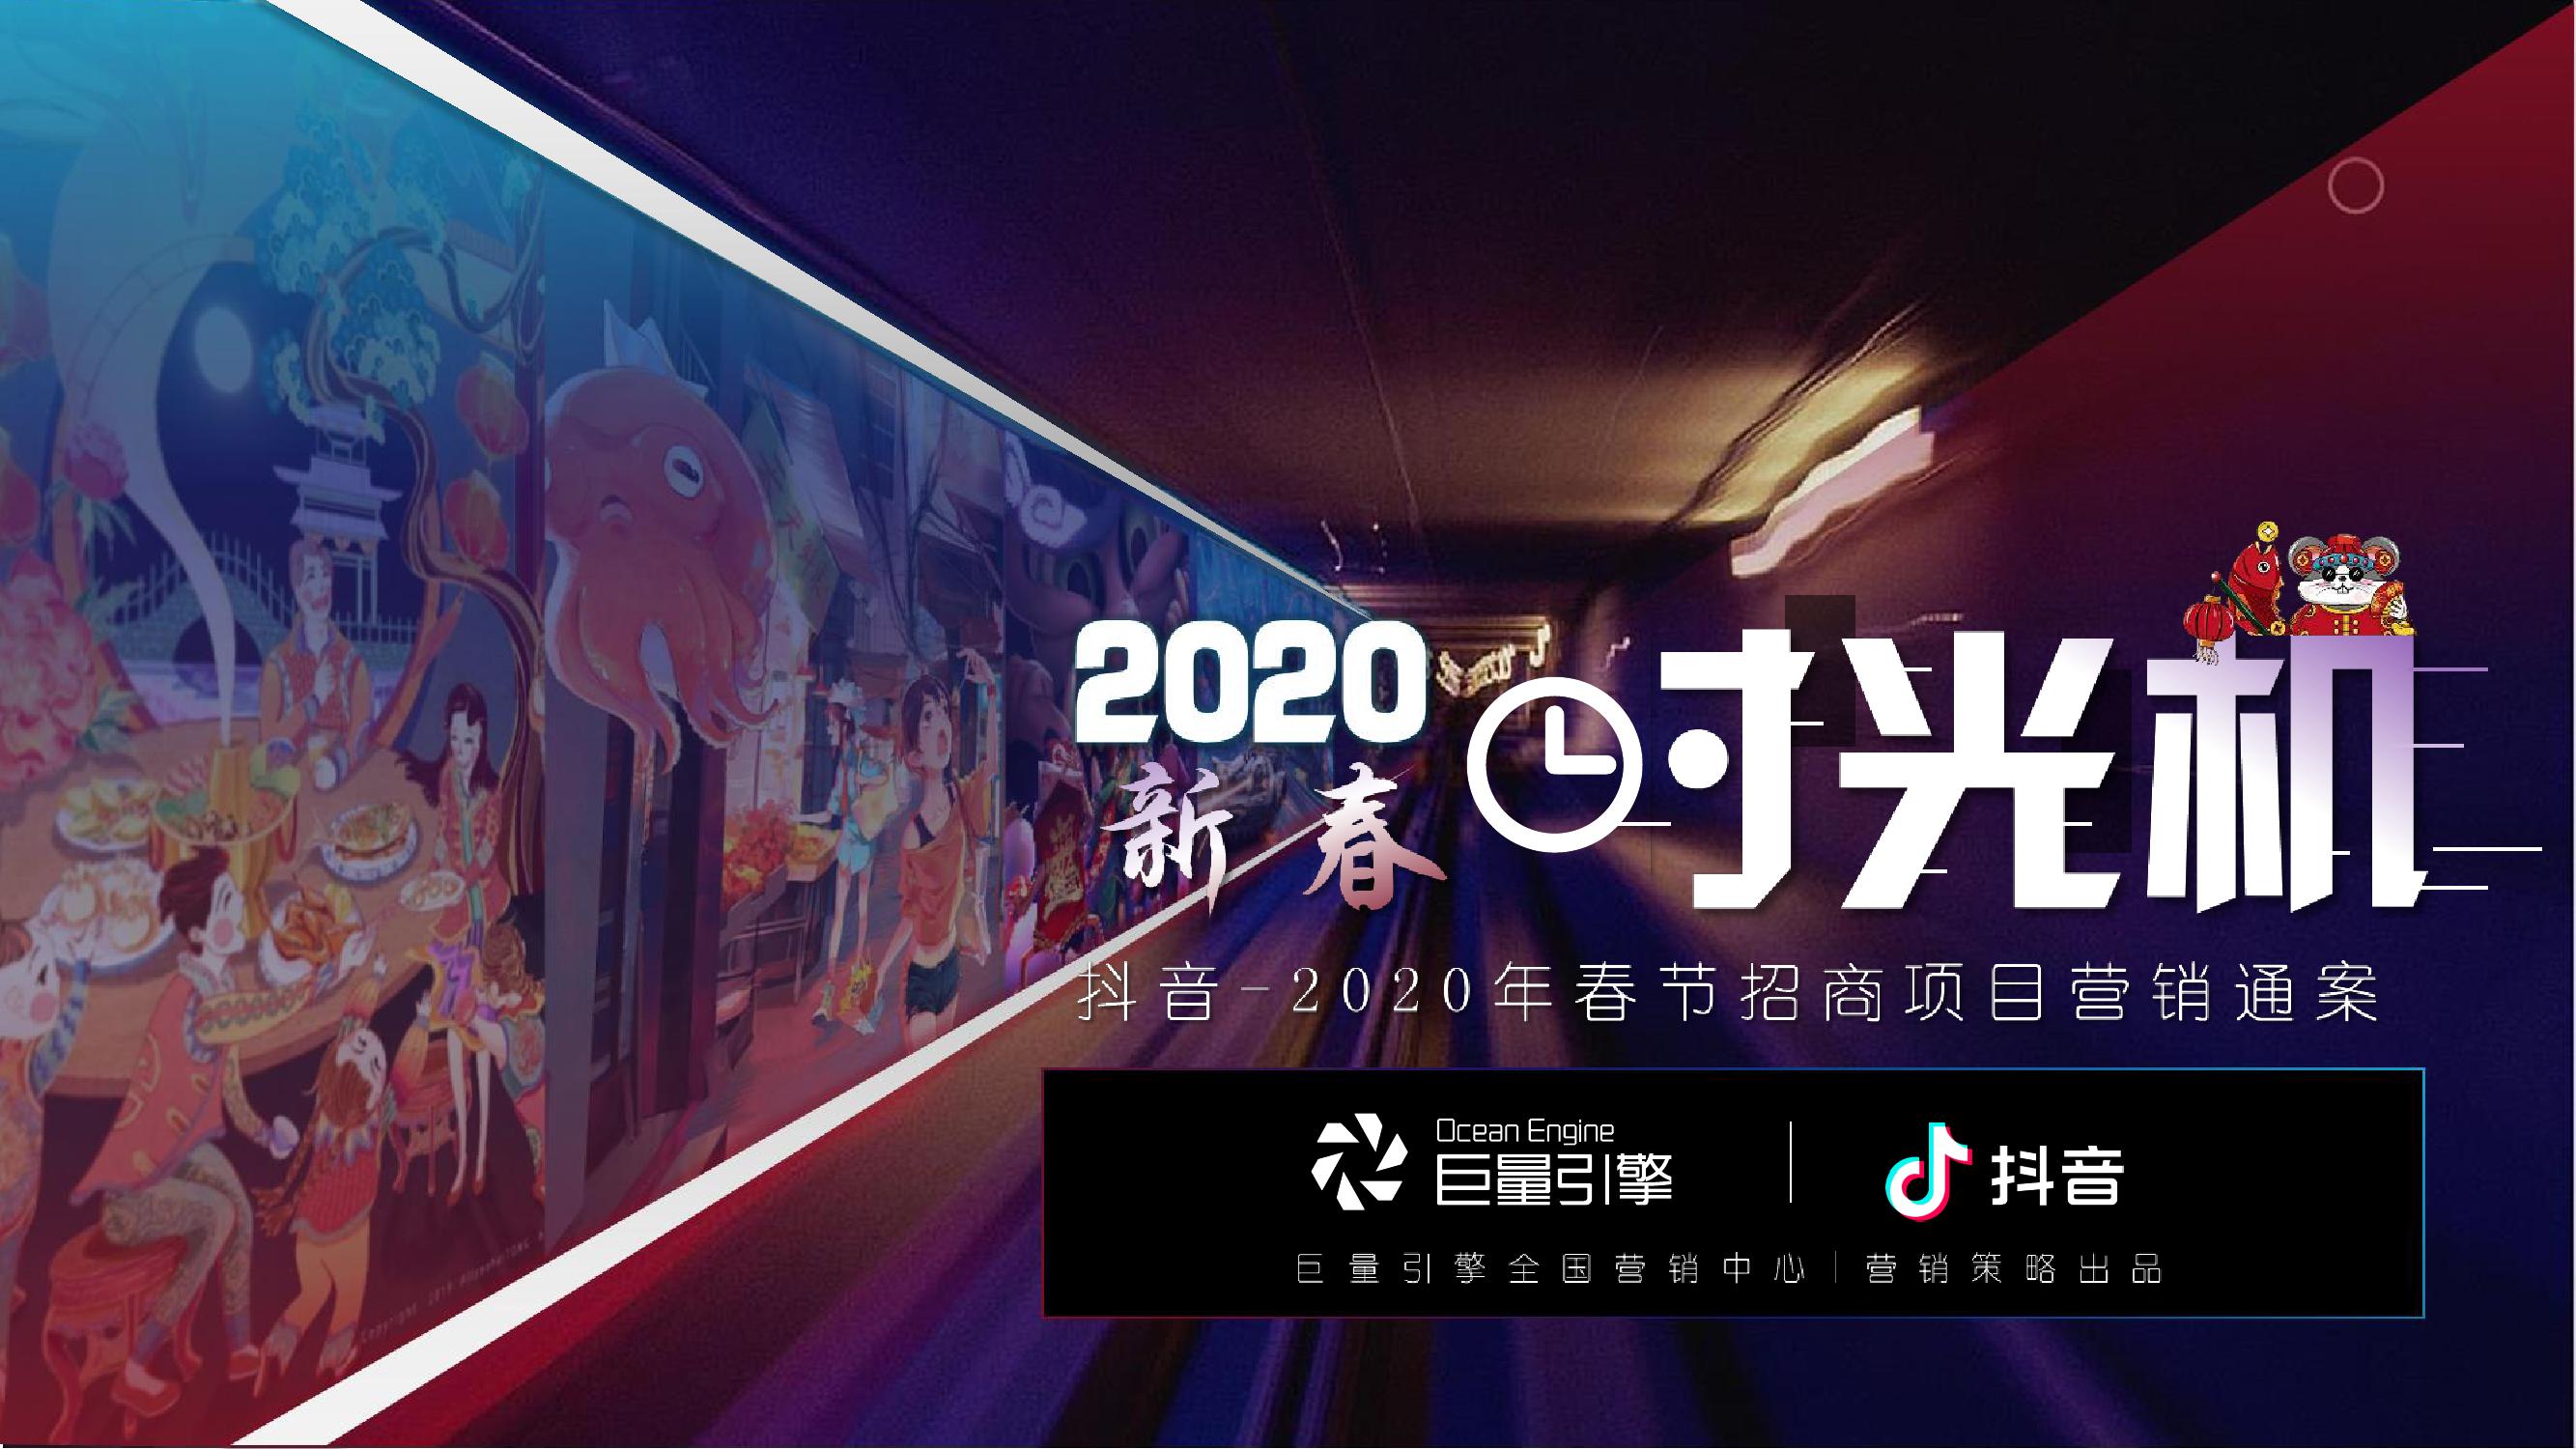 2020春节抖音营销招商方案